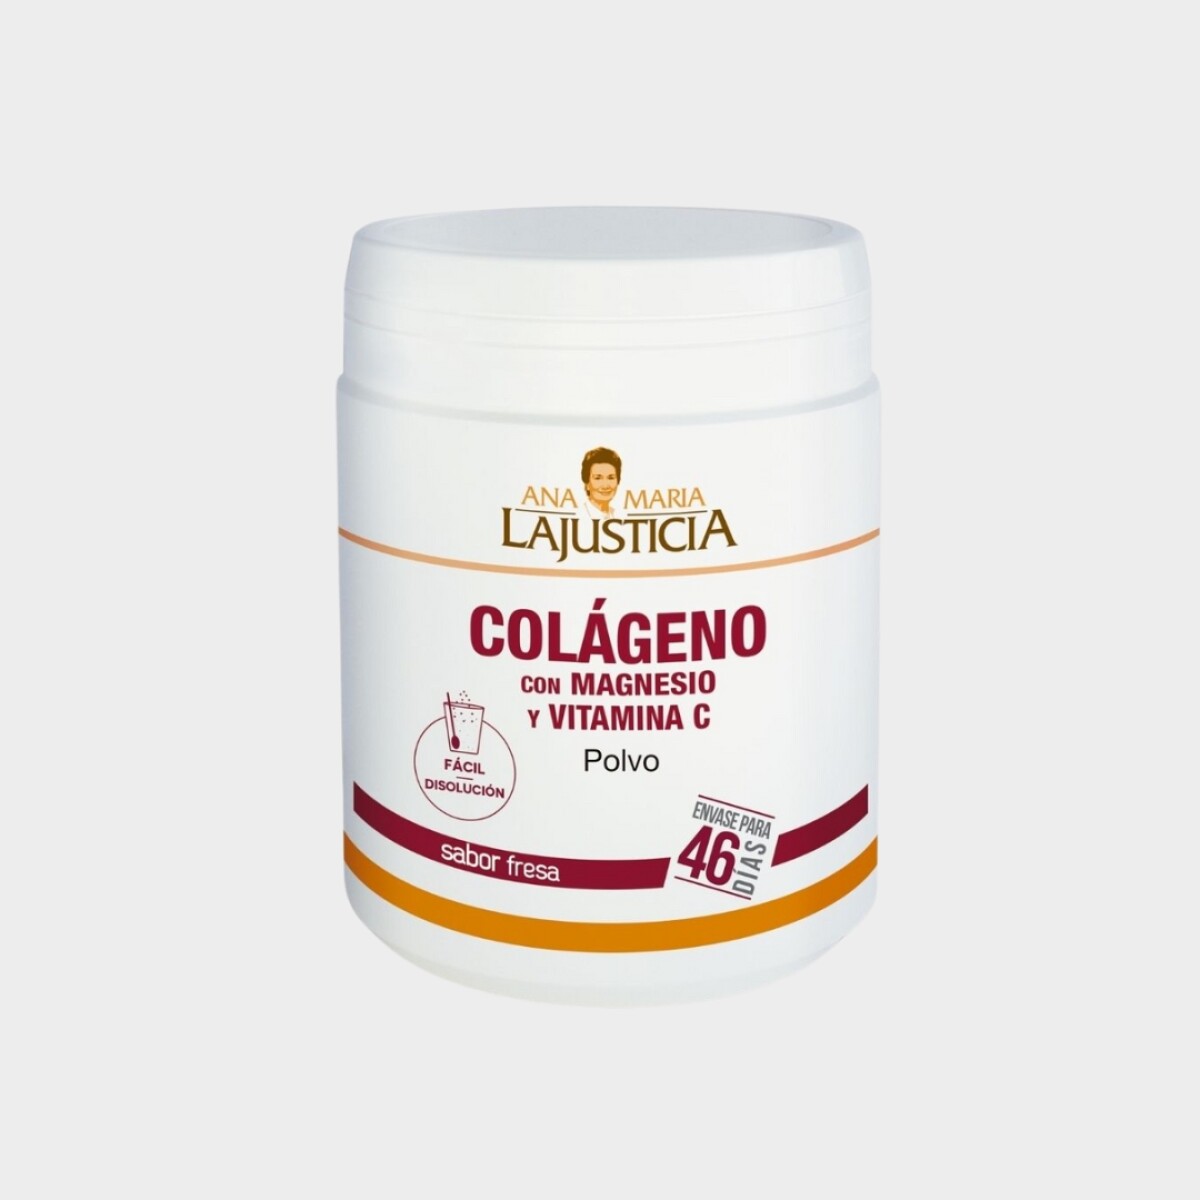 Colágeno con Magnesio y Vitamina C en Polvo - Ana María Lajusticia 